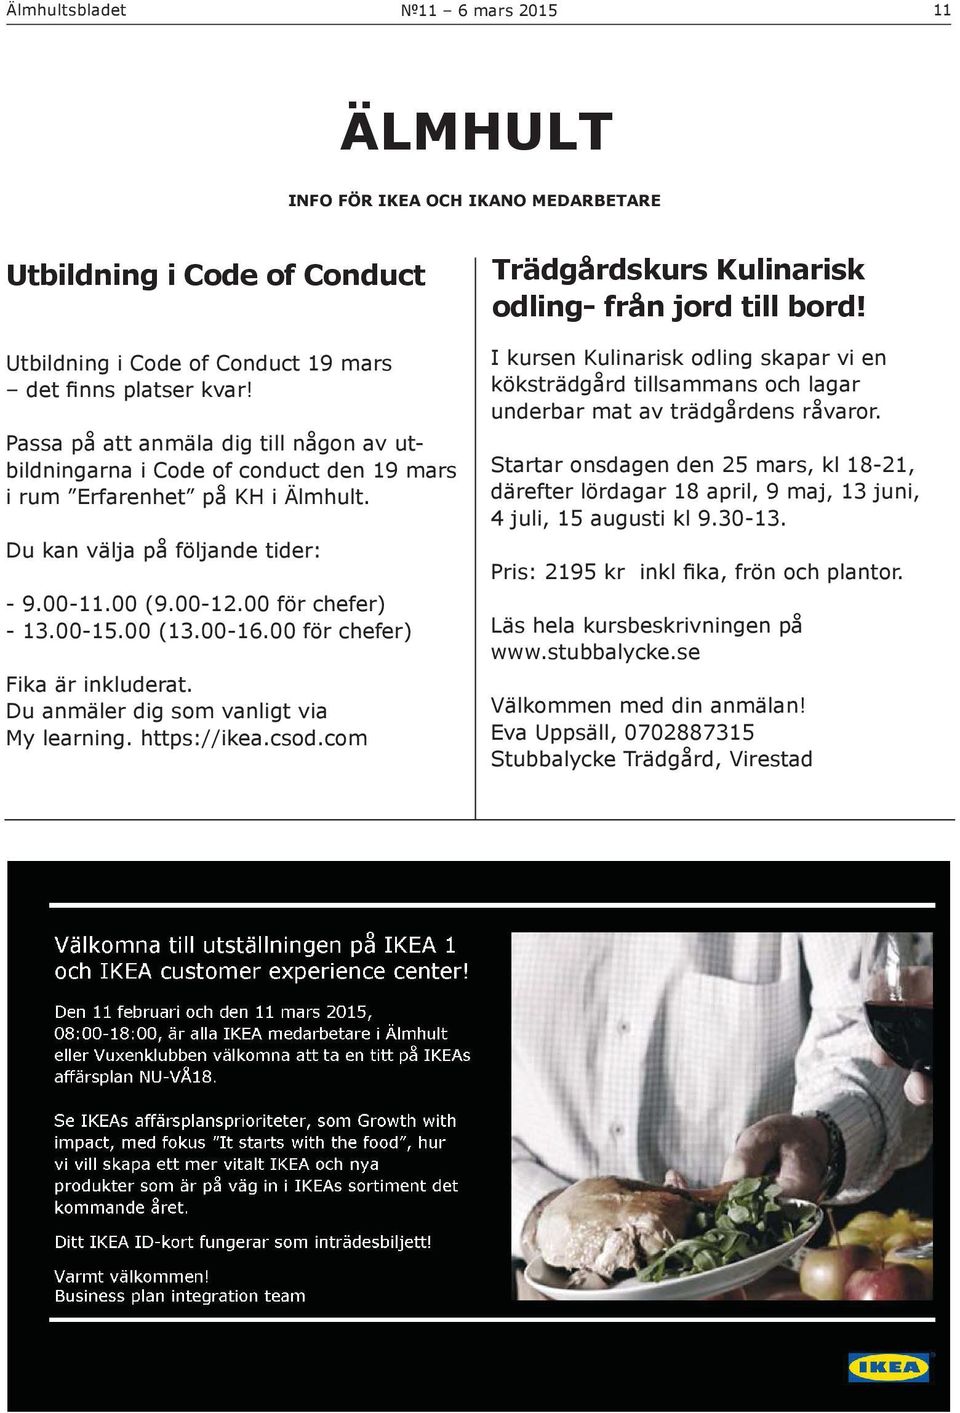 Passa på att anmäla dig till någon av utbildningarna i Code of conduct den 19 mars i rum Erfarenhet på KH i Älmhult. Du kan välja på följande tider: - 9.00-11.00 (9.00-12.00 för chefer) - 13.00-15.